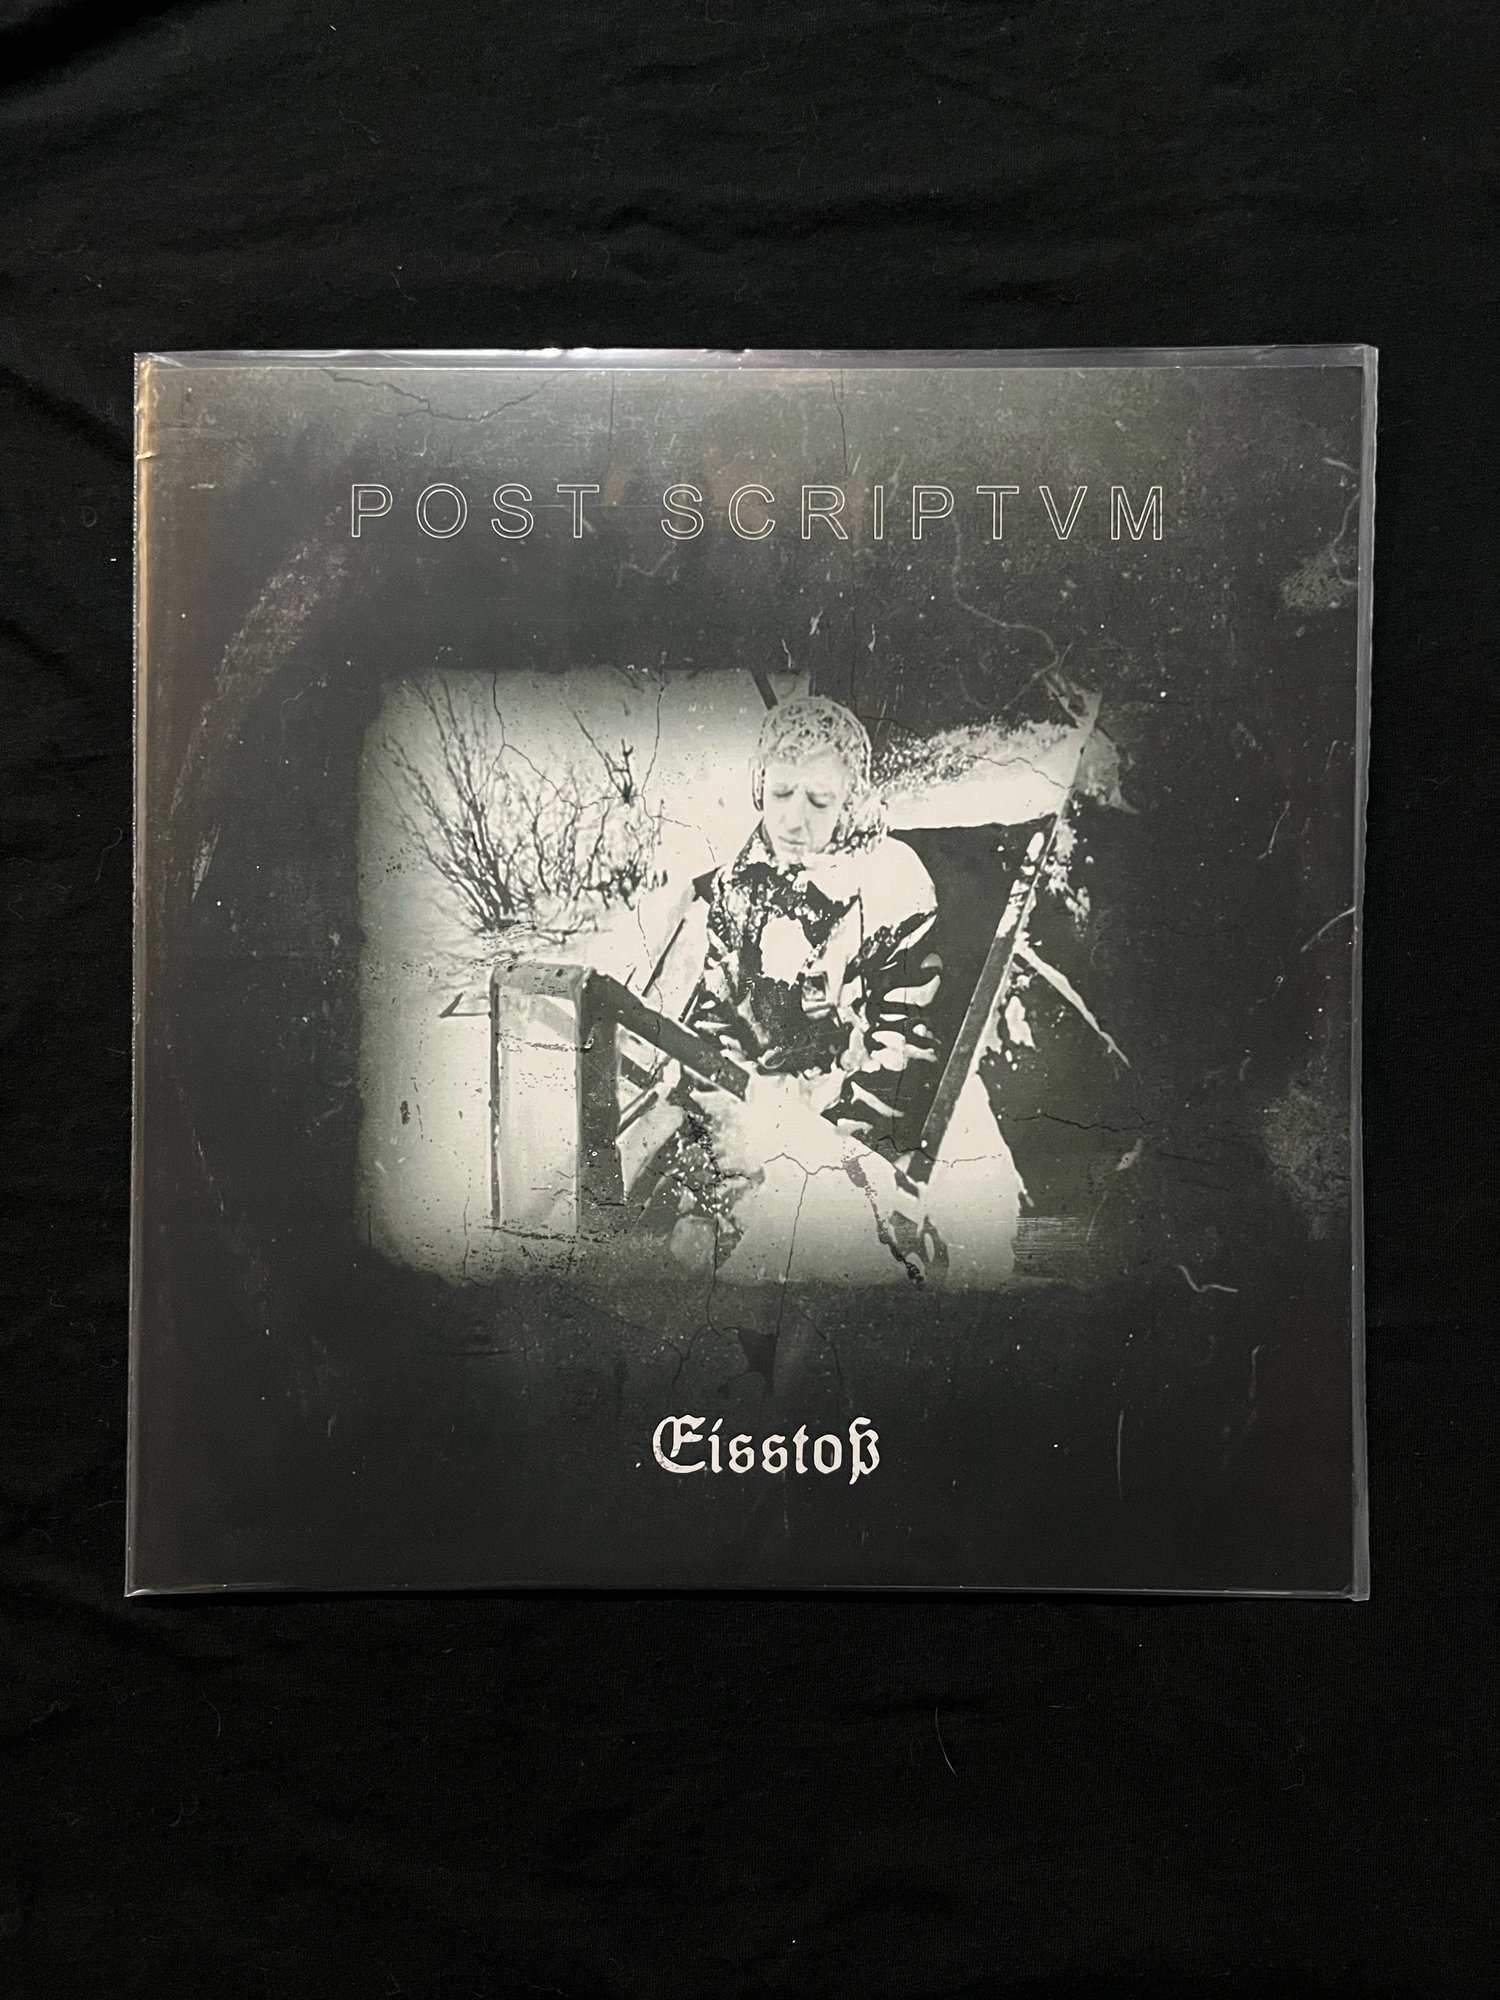 Post Scriptvm - Eisstoß LP (Tesco)